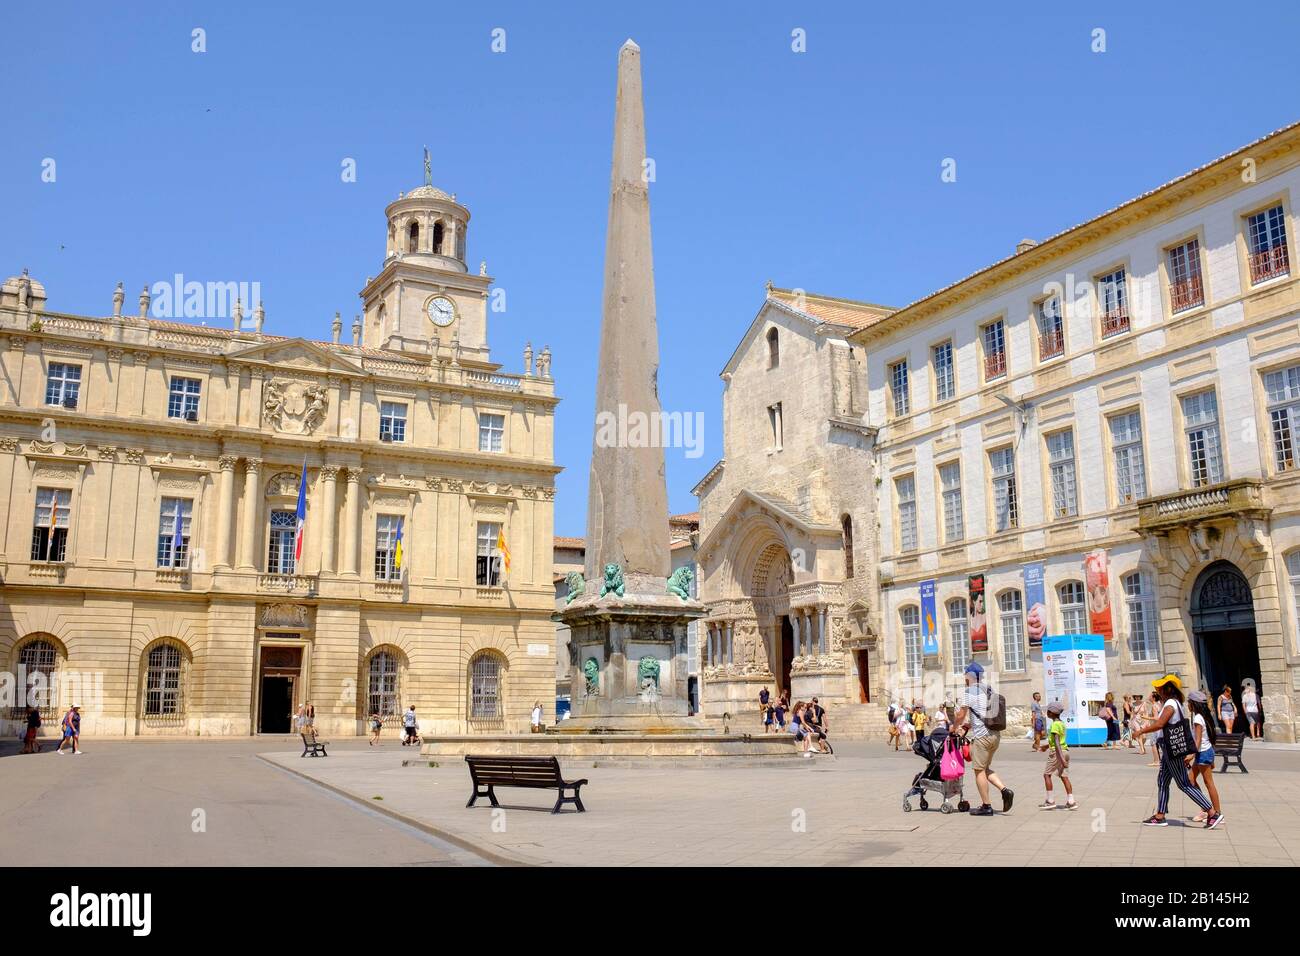 Place de la Republique: Hôtel de Ville, obelisk on fountain, portal of St. Trophime, Arles, France Stock Photo